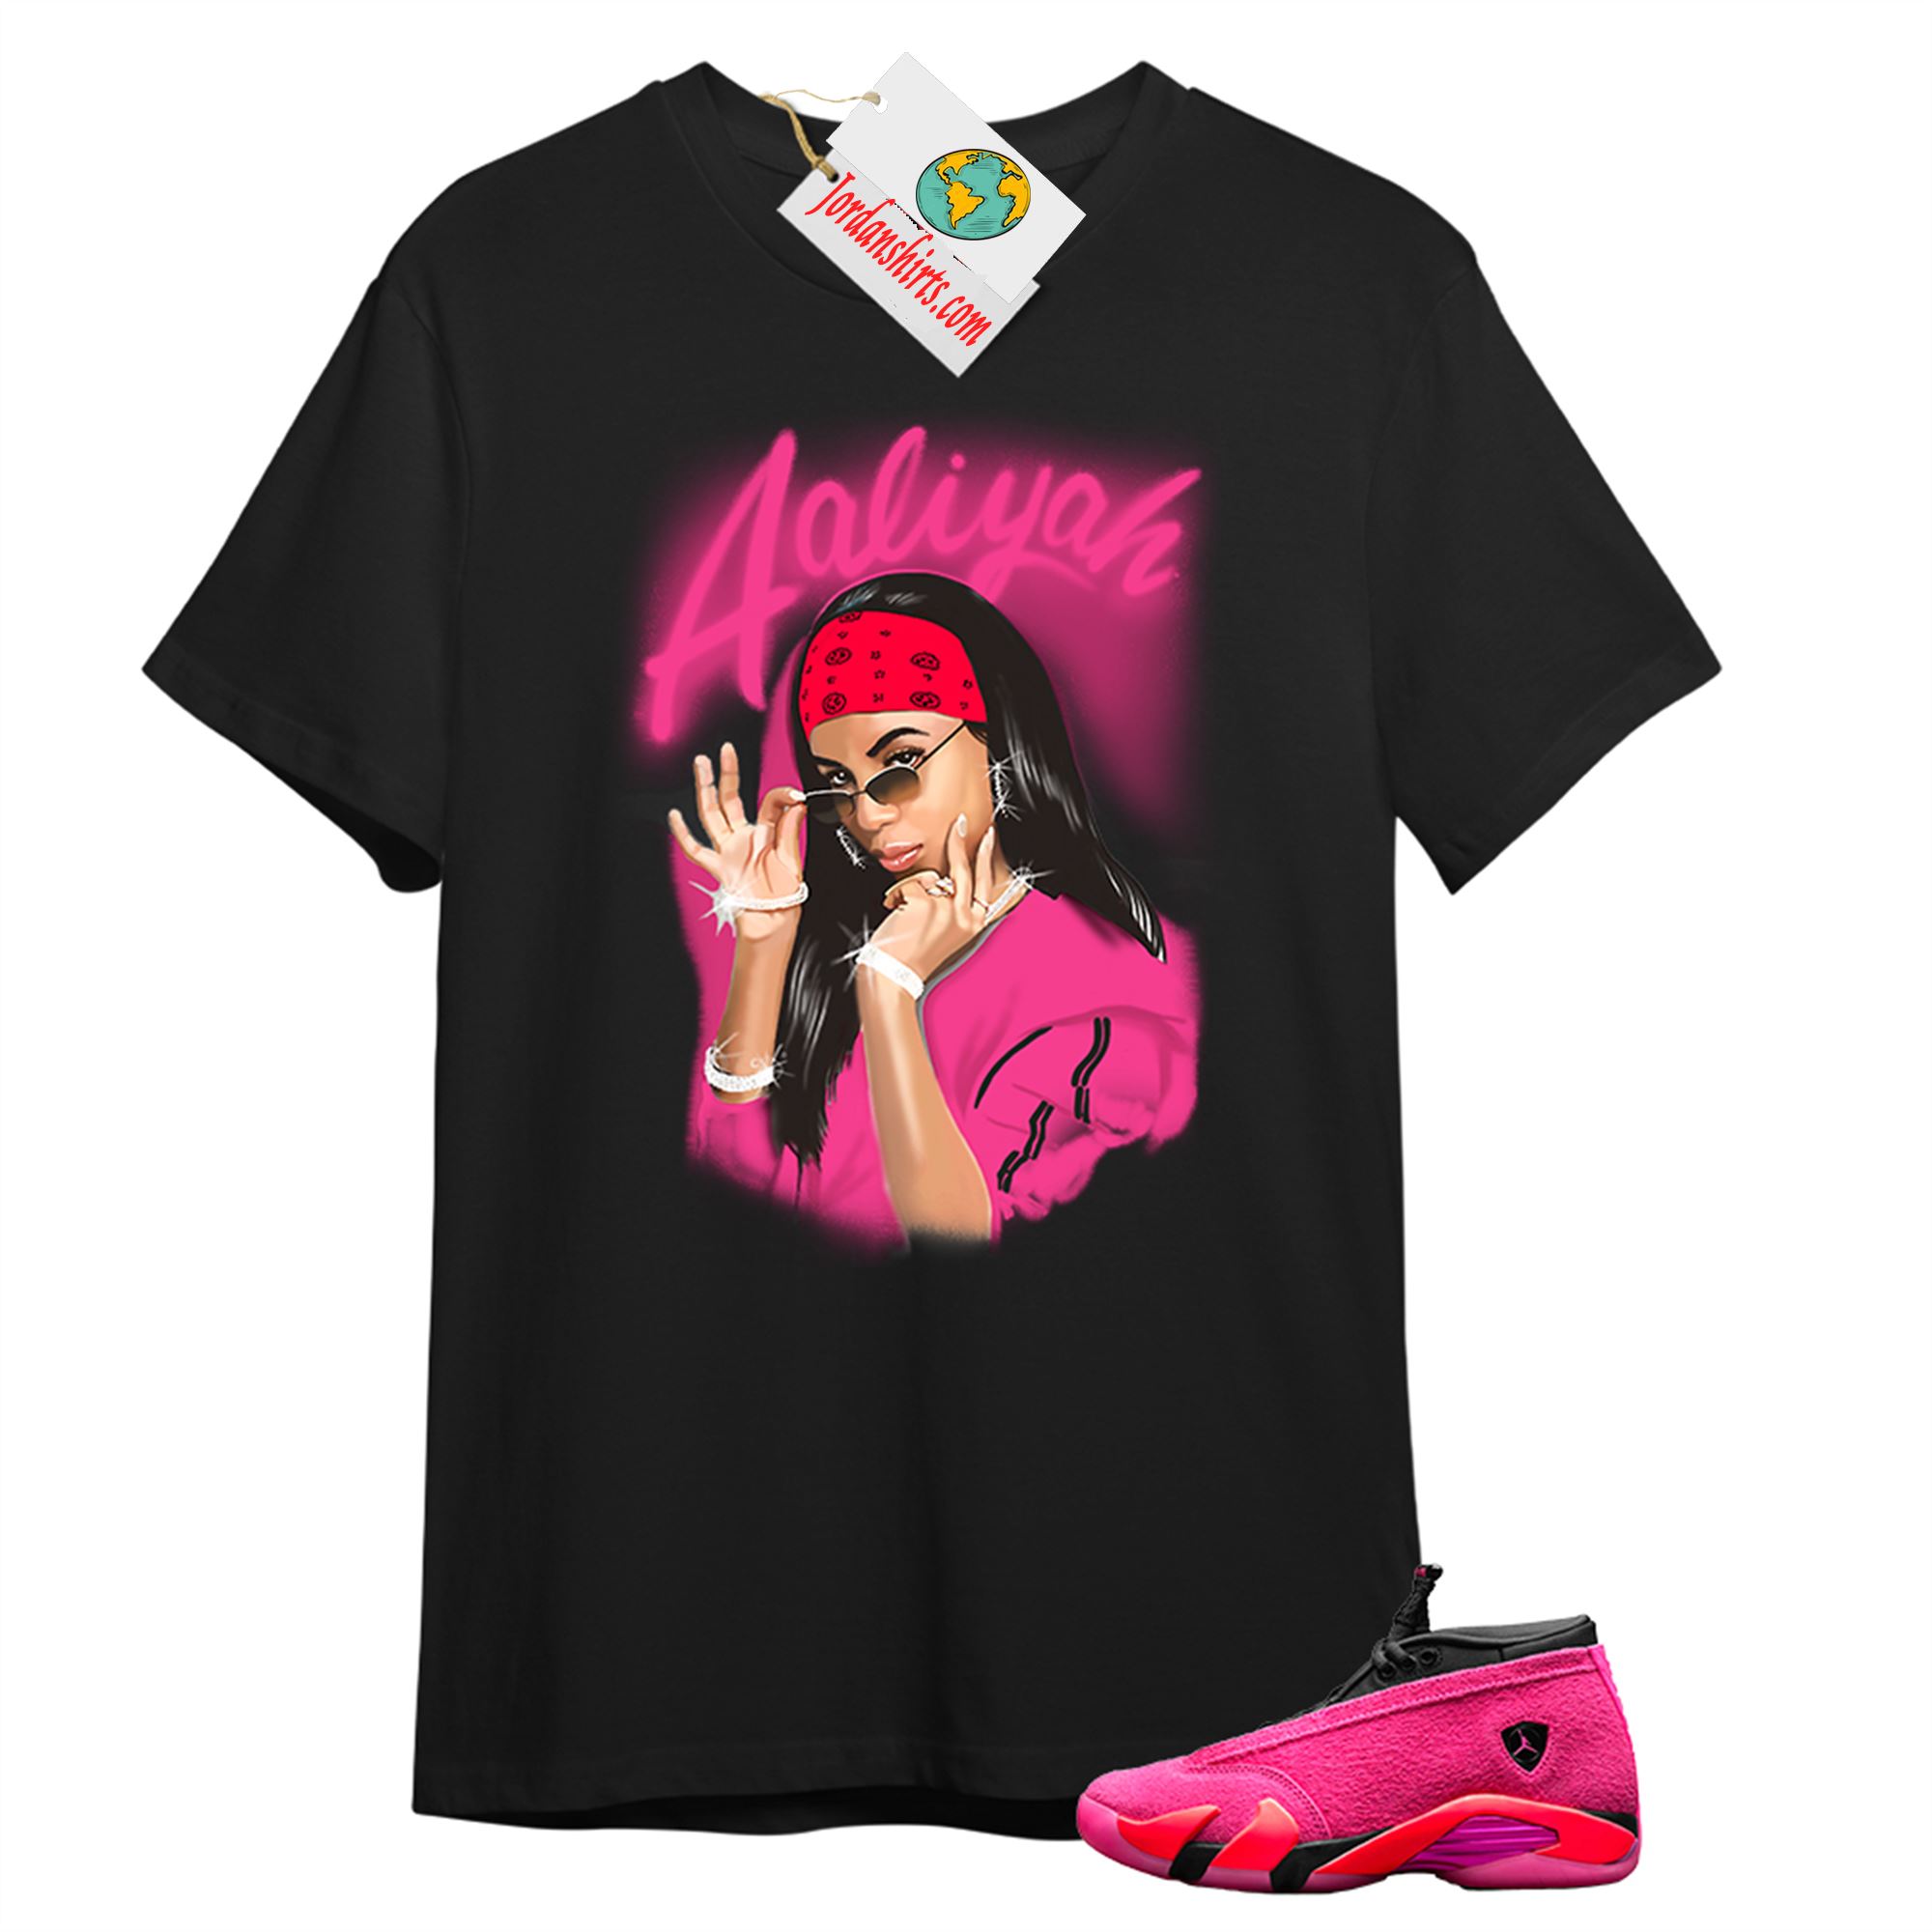 Jordan 14 Shirt, Aaliyah Black T-shirt Air Jordan 14 Wmns Shocking Pink 14s Full Size Up To 5xl